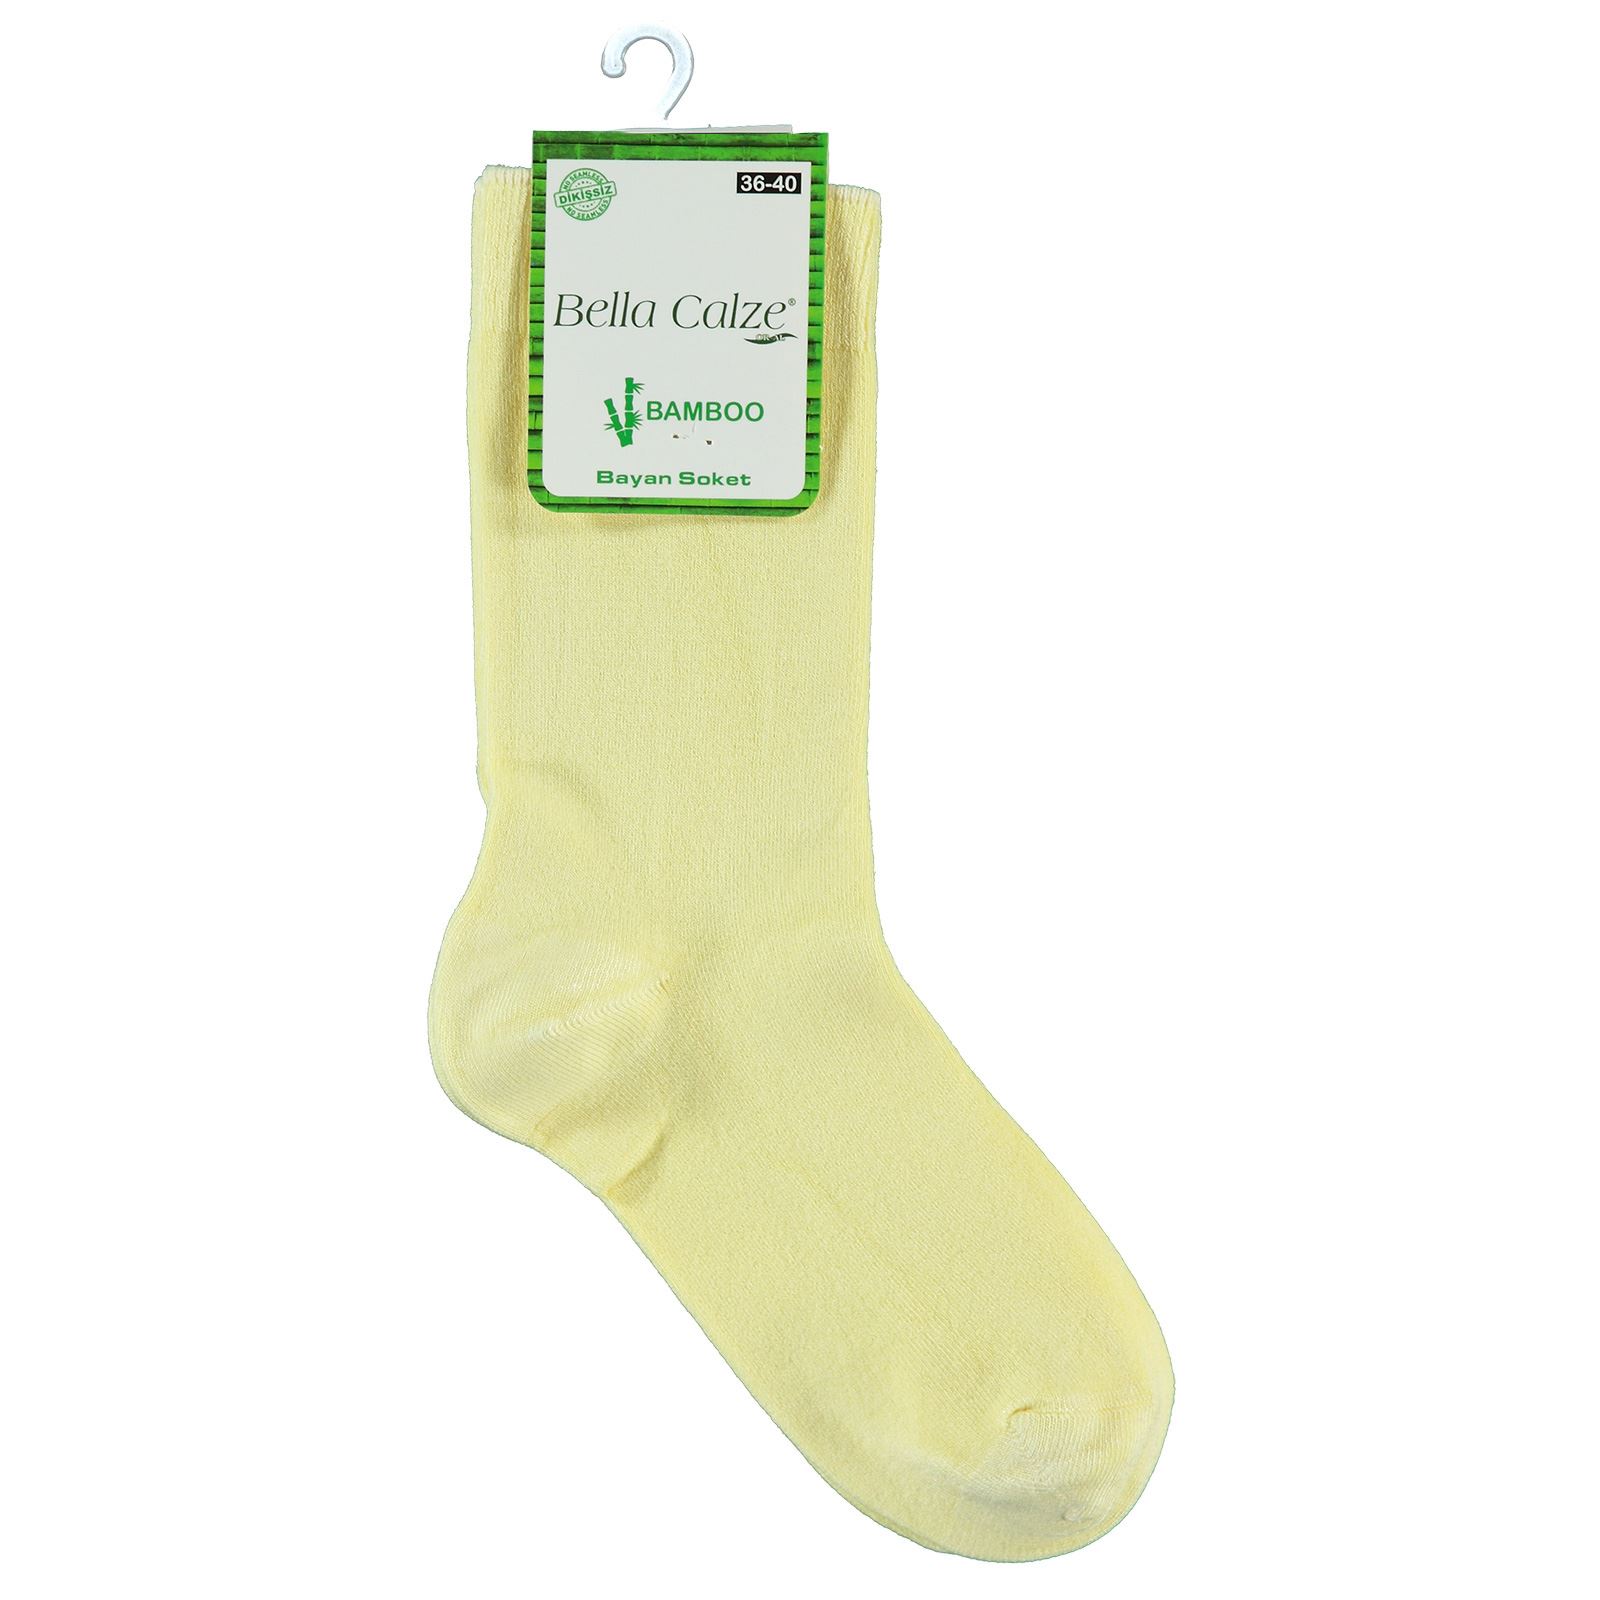 Bella Calze Kız Çocuk Bambu Soket Çorap 36-40 Numara Sarı